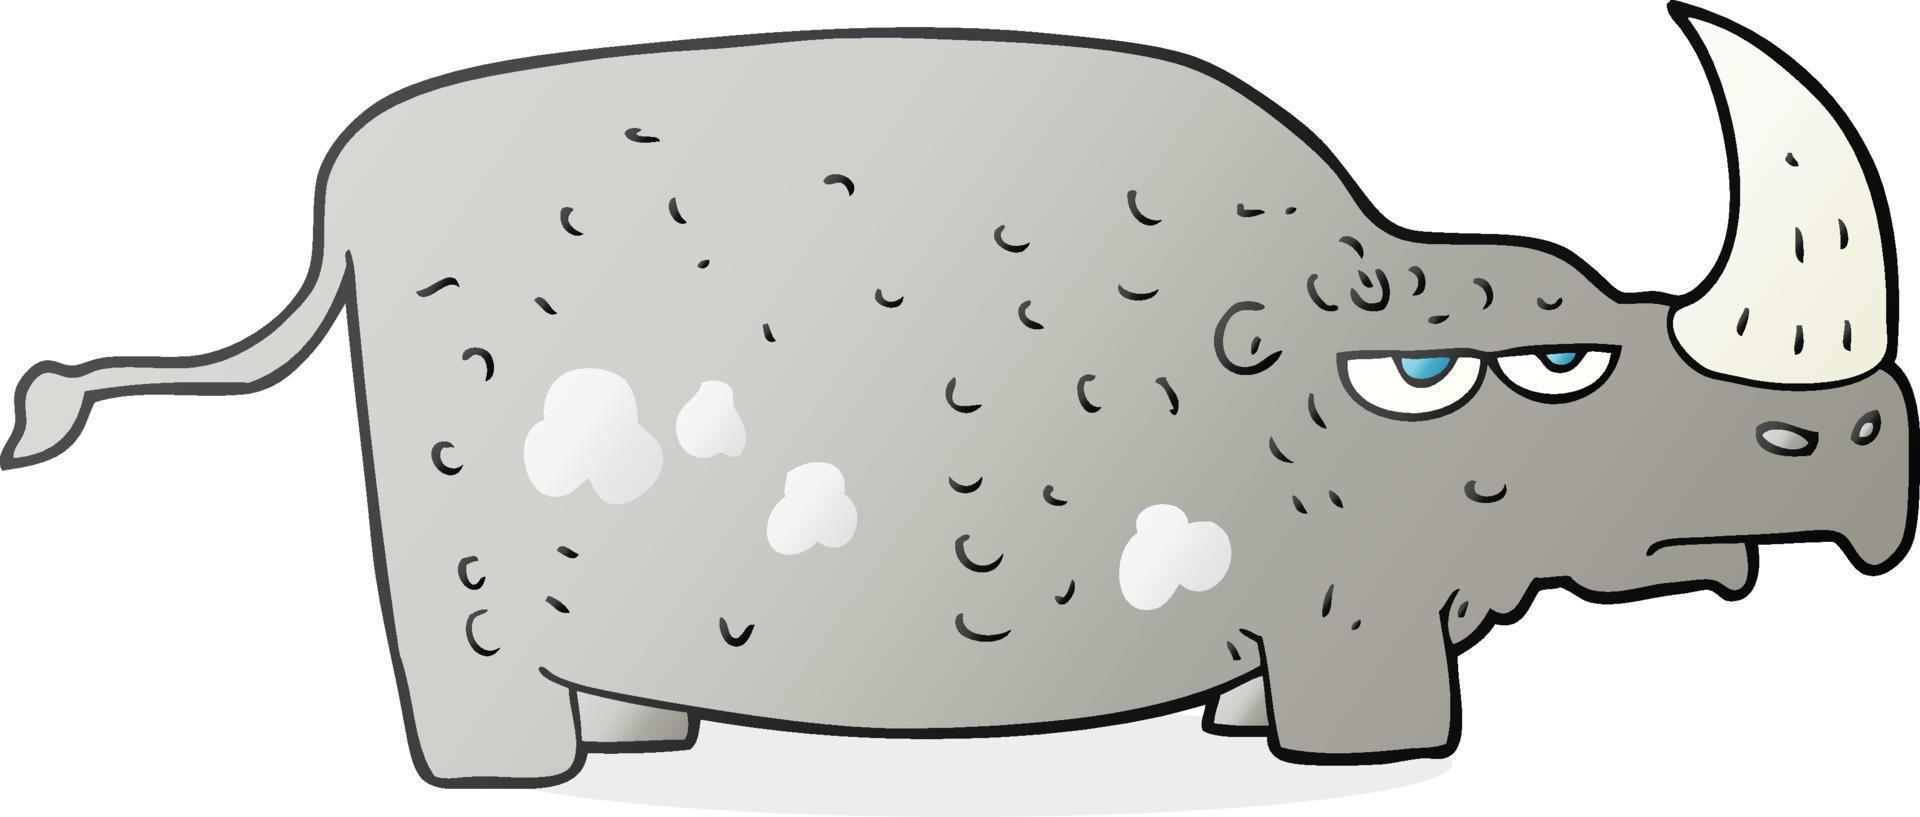 doodle character cartoon rhino vector